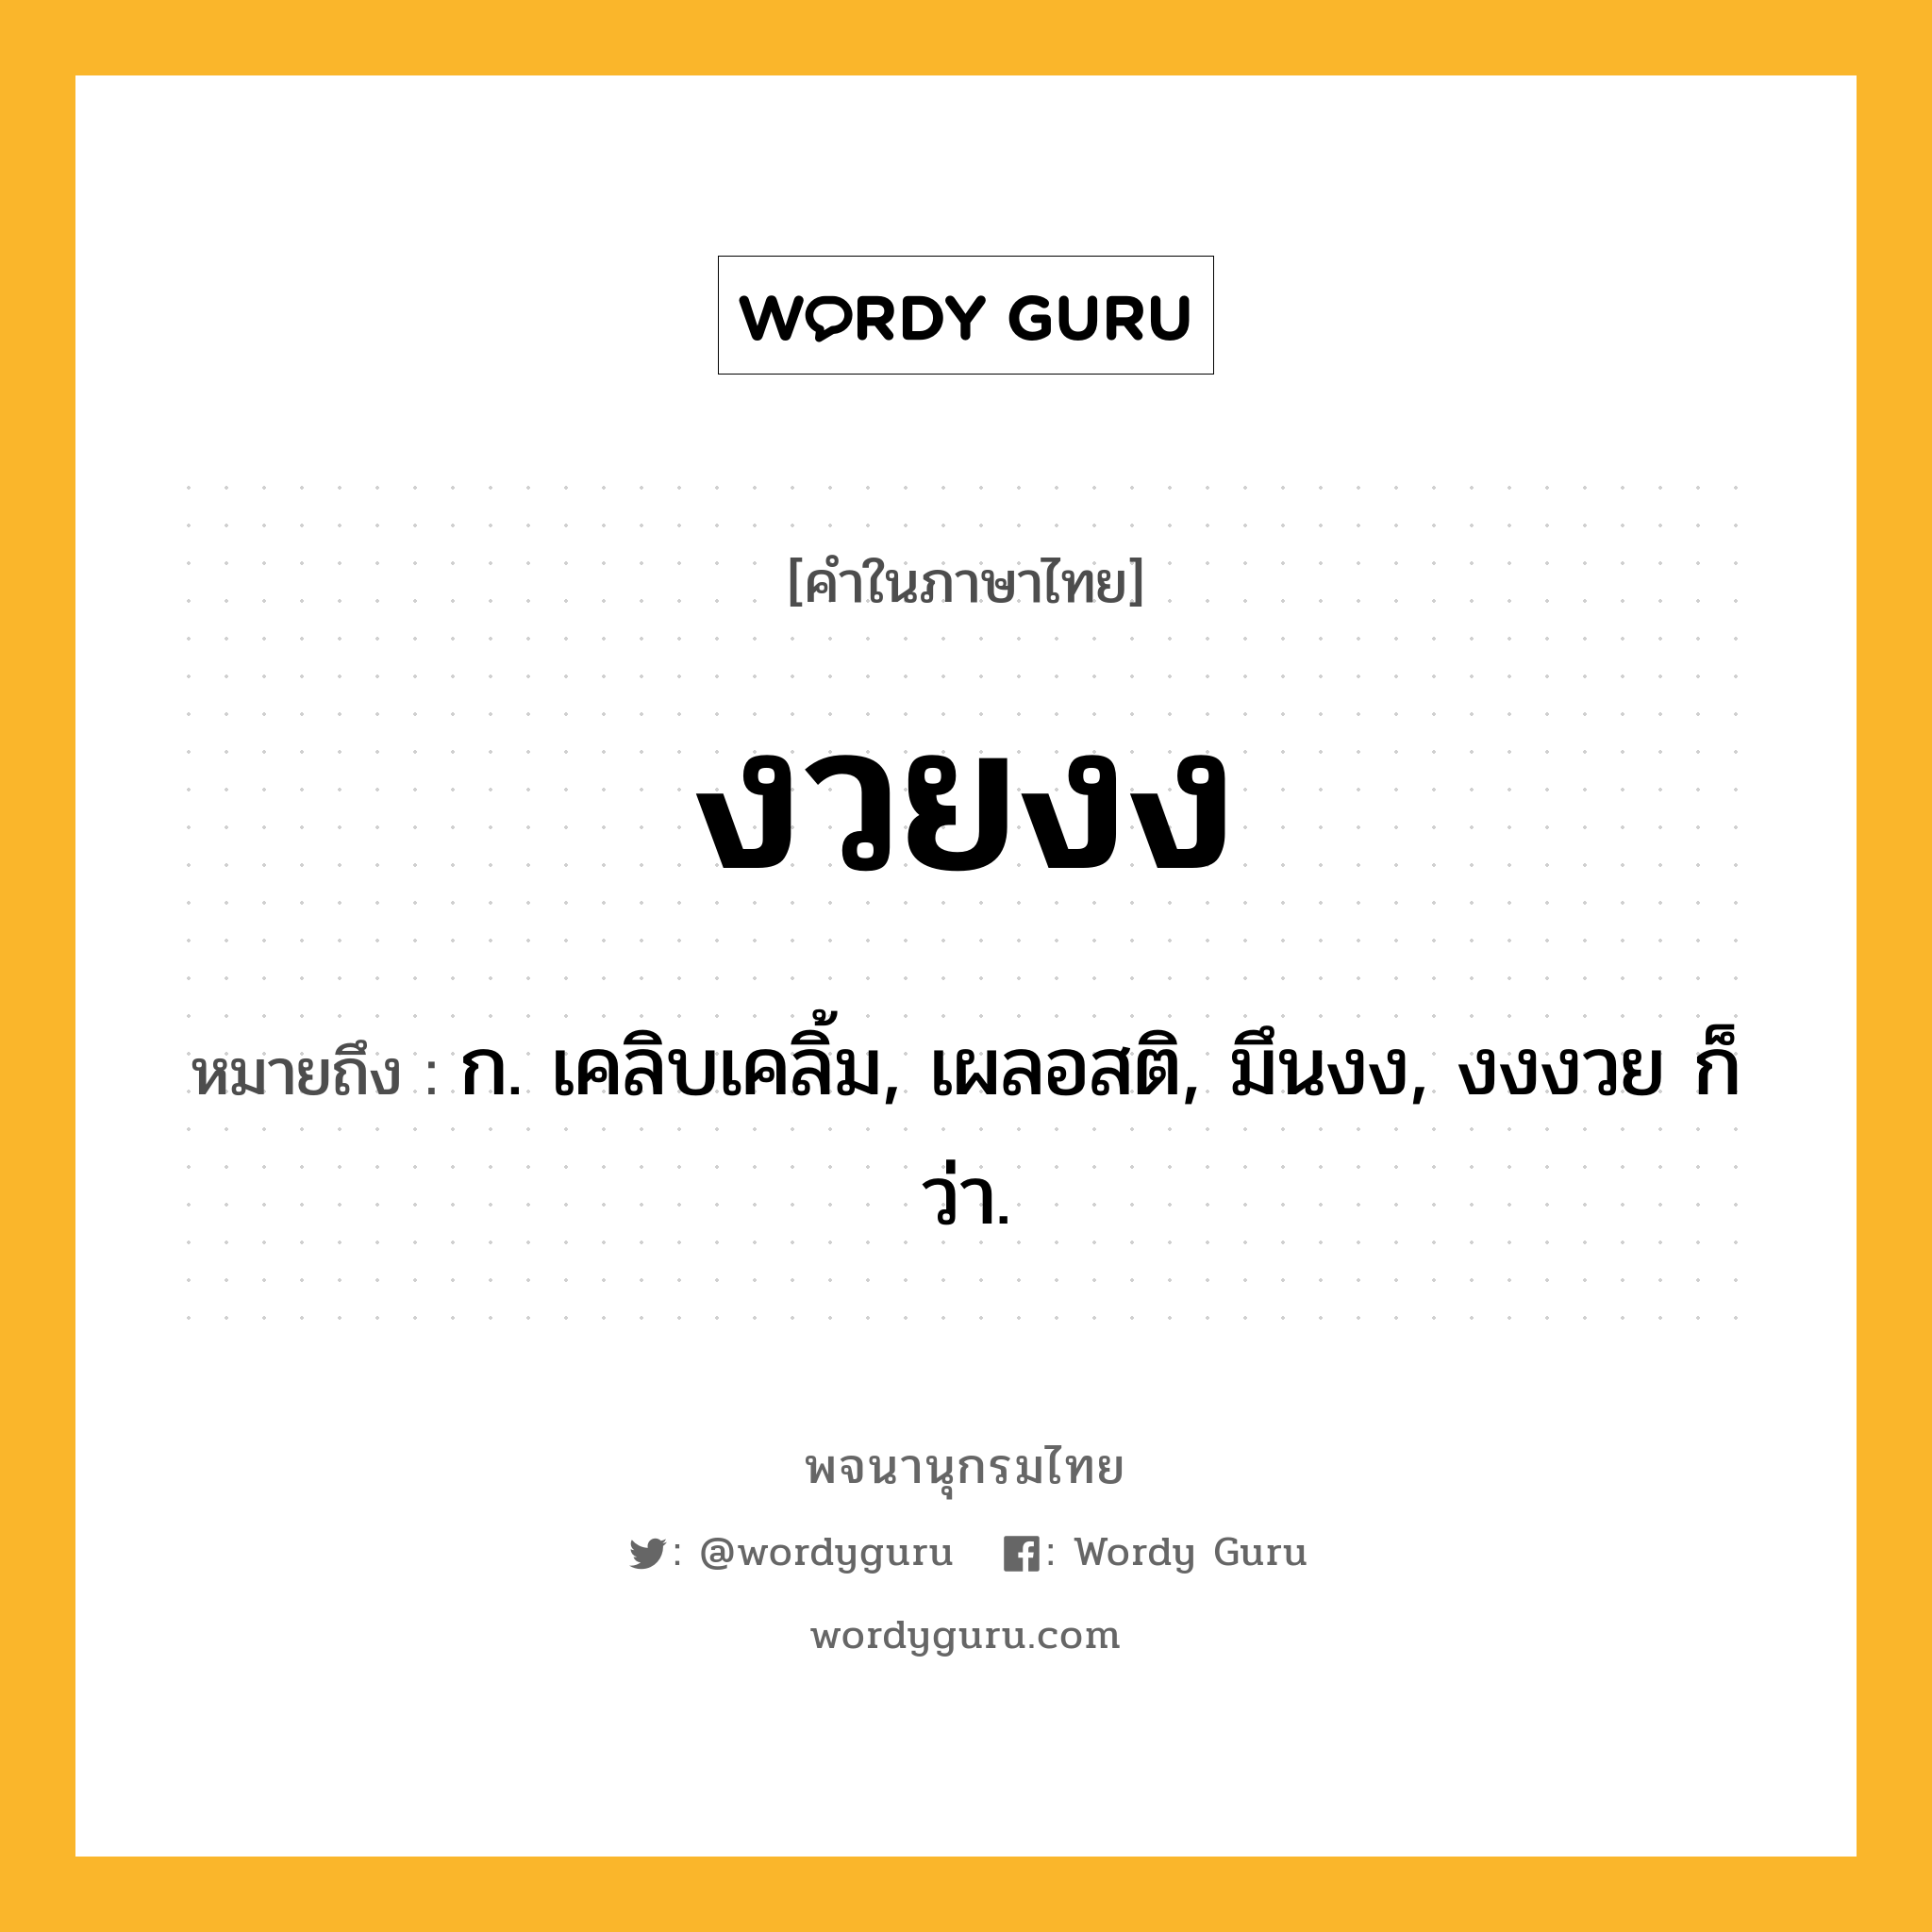 งวยงง ความหมาย หมายถึงอะไร?, คำในภาษาไทย งวยงง หมายถึง ก. เคลิบเคลิ้ม, เผลอสติ, มึนงง, งงงวย ก็ว่า.